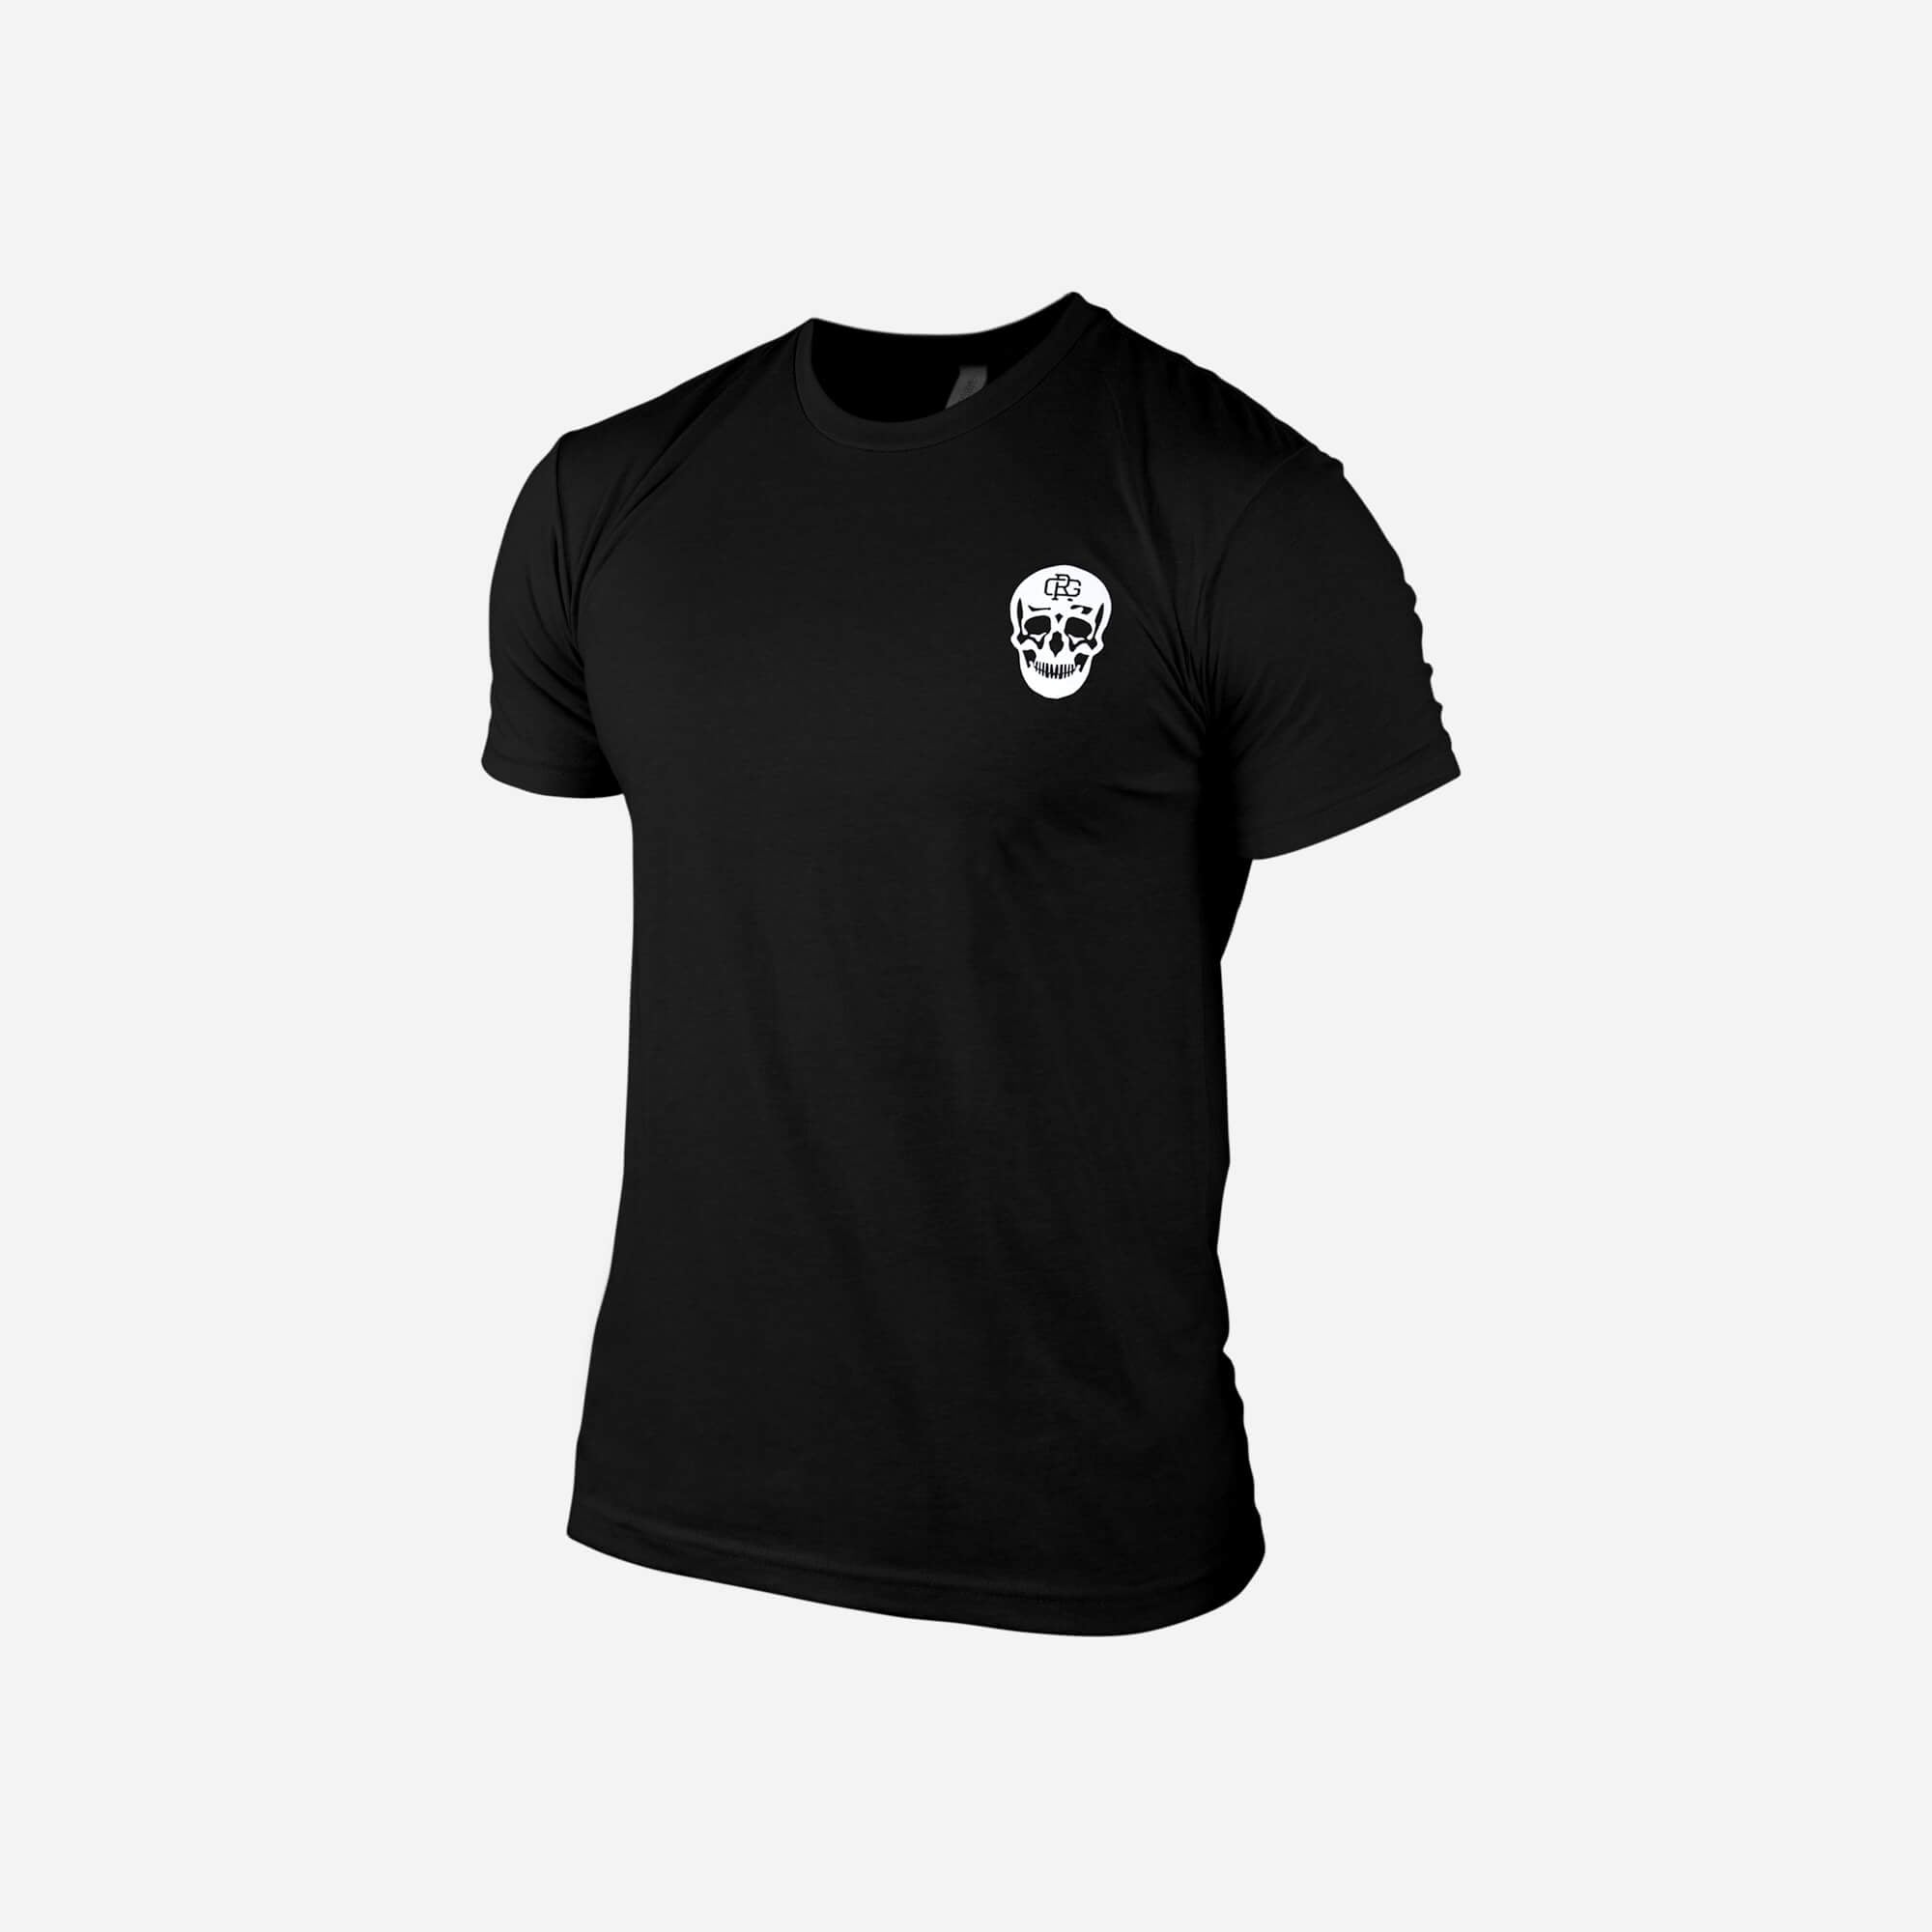 Gymreapers GR T-Shirt - Schwarz/Weiß